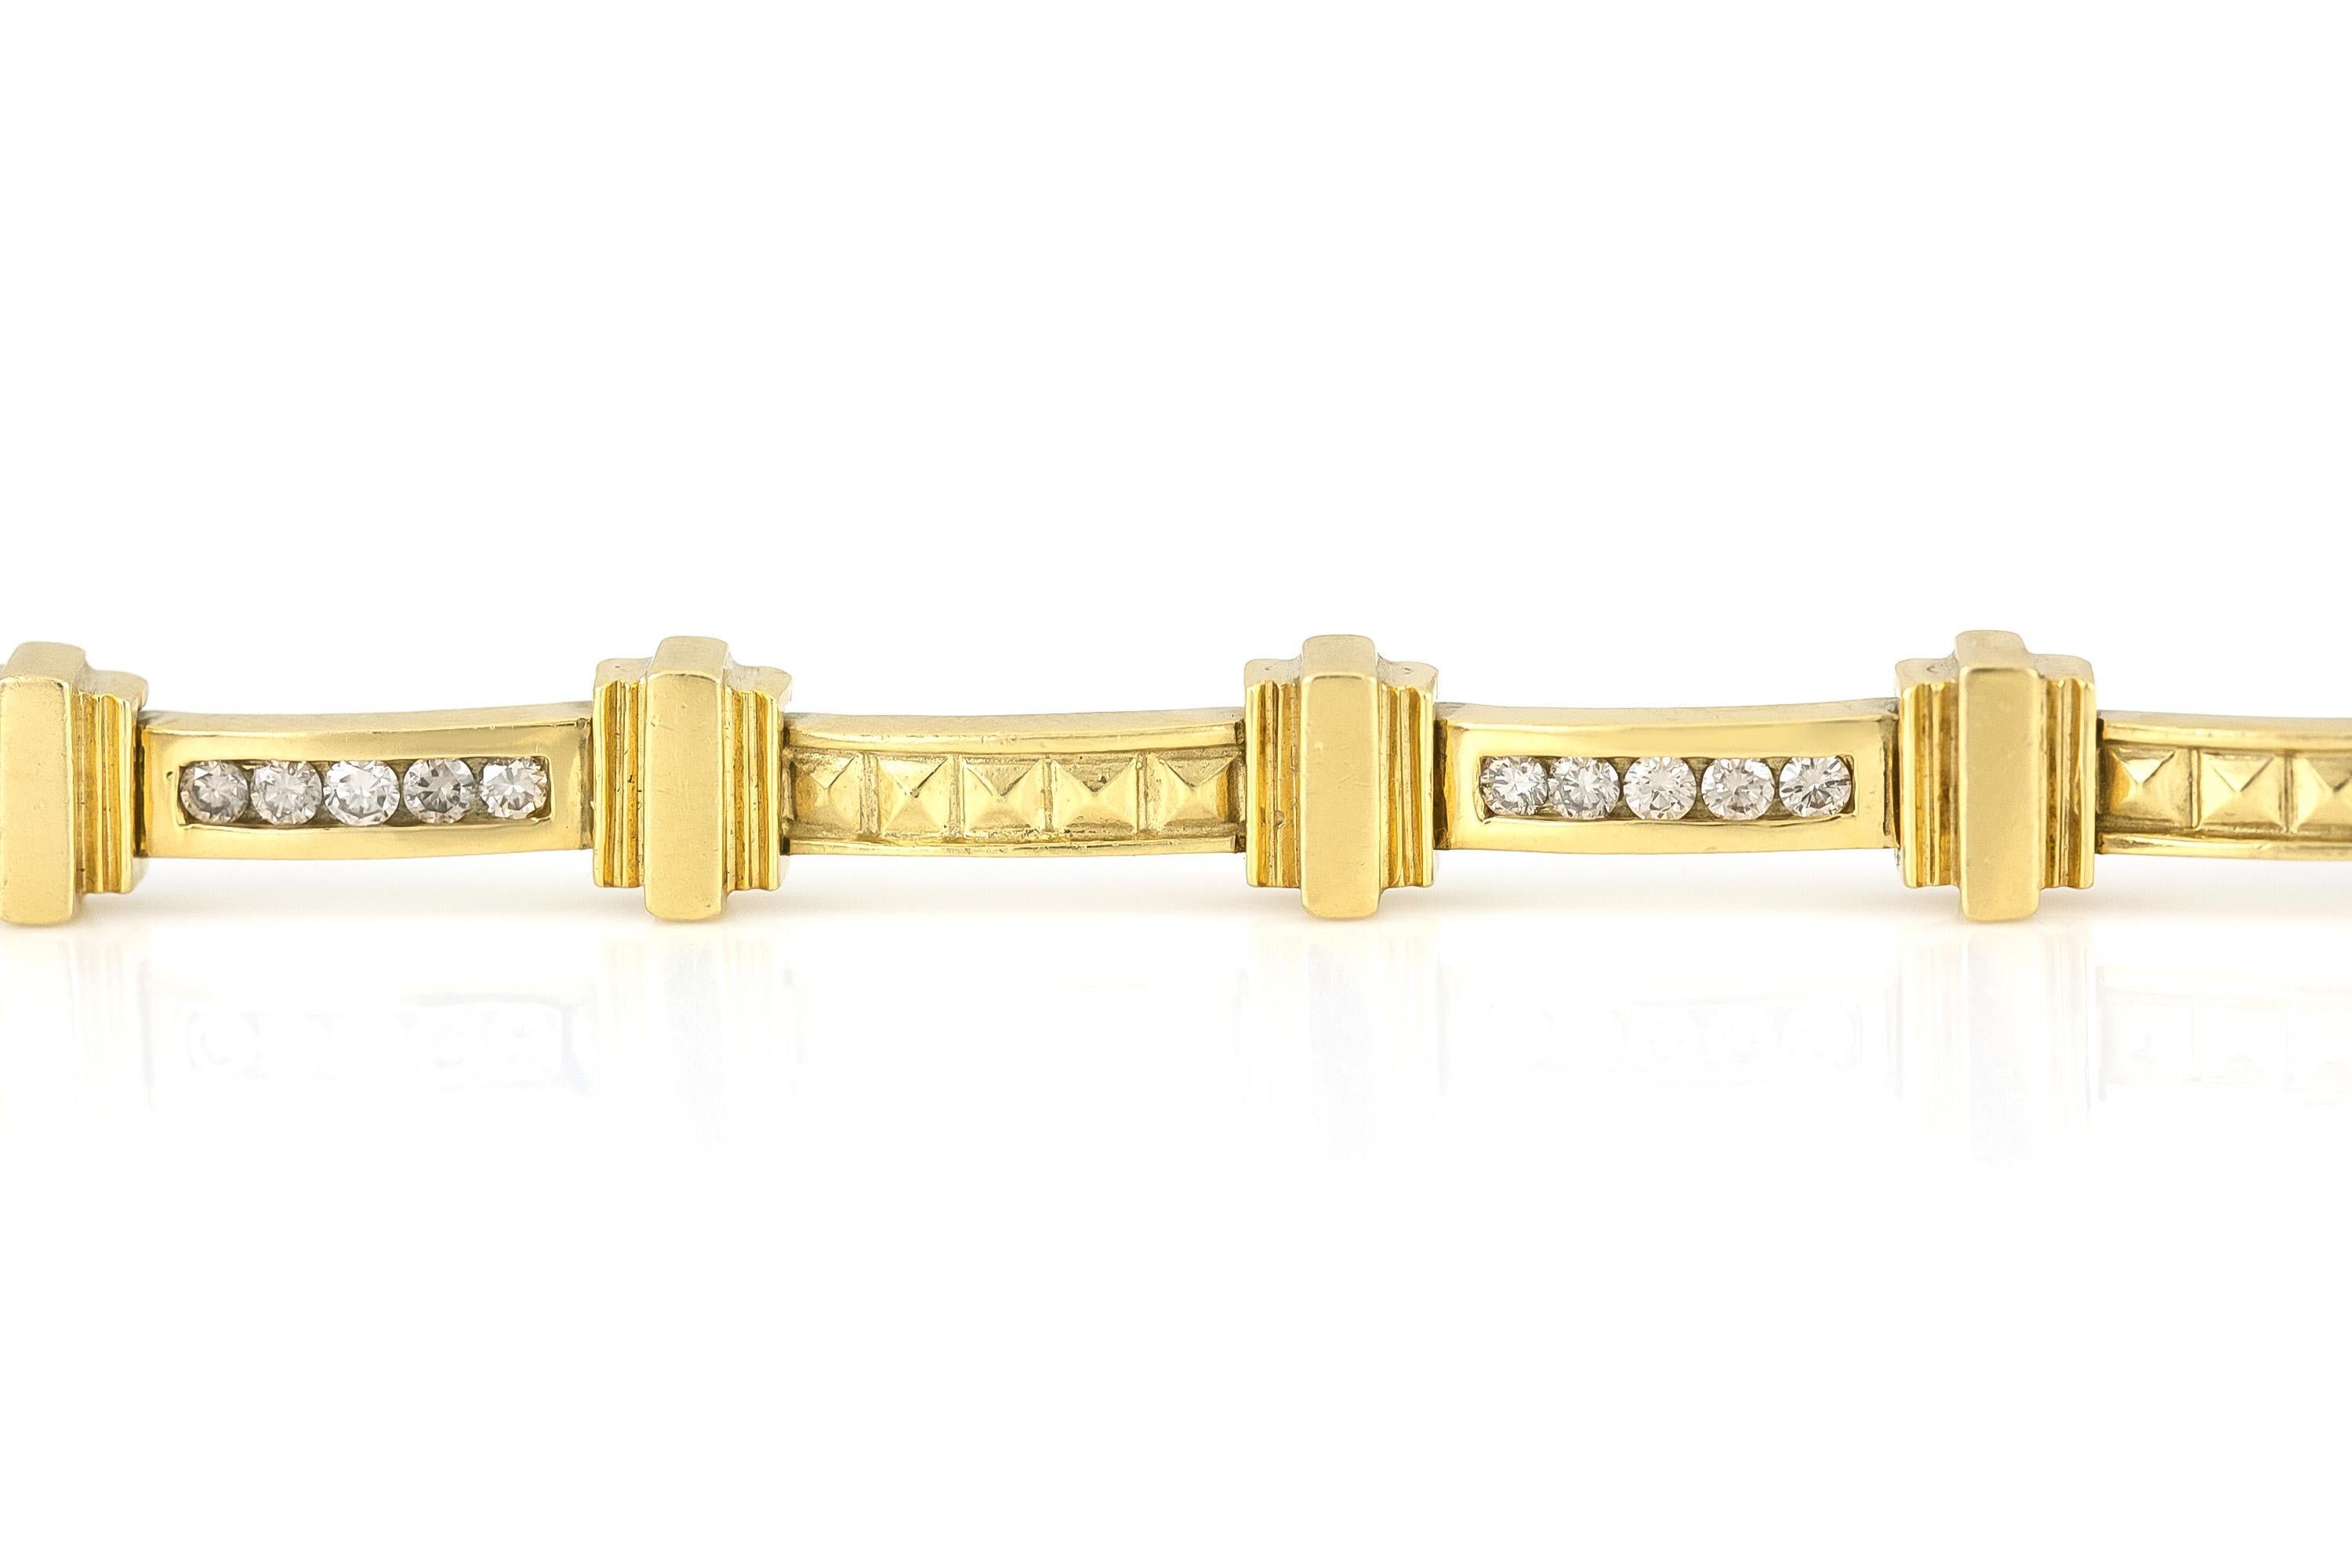 Finement réalisé en or jaune 18k avec des diamants ronds de taille brillant pesant environ 1,20 carats au total.
Circa 1980
Taille 7 pouces